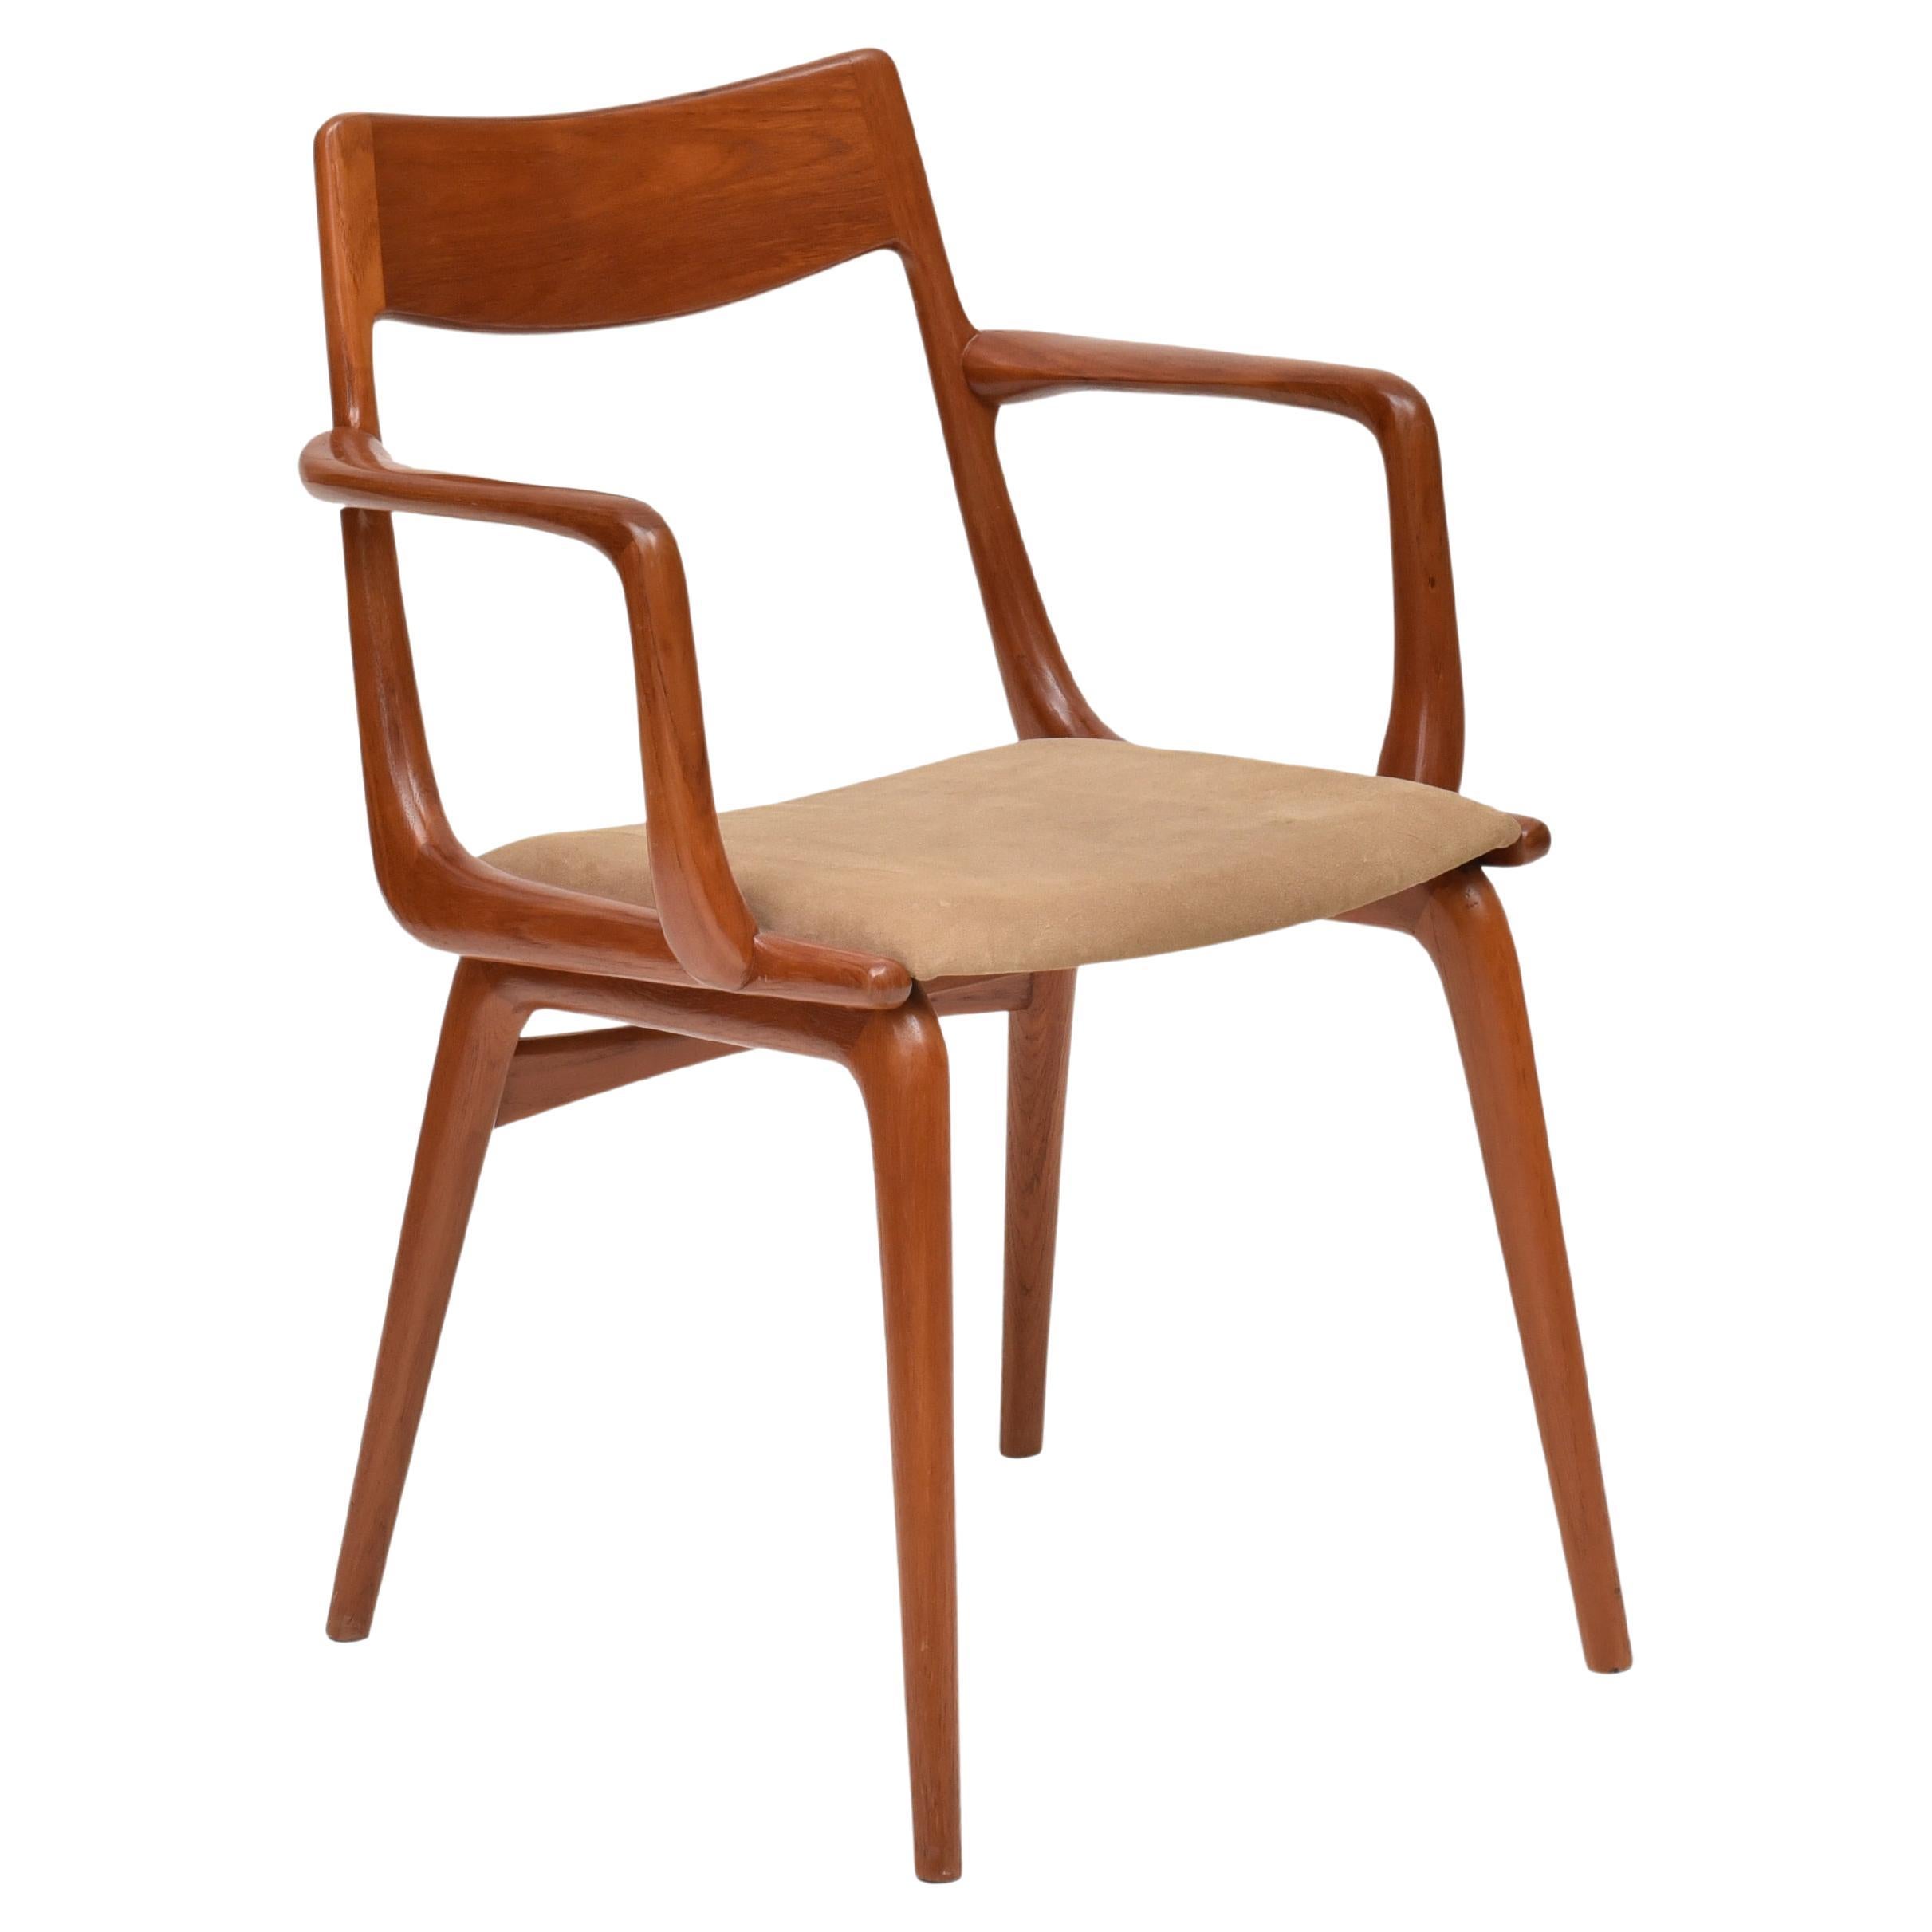 Boomerang Chair in Salmwood by Alfred Christensen for Slagelse Møbelværk